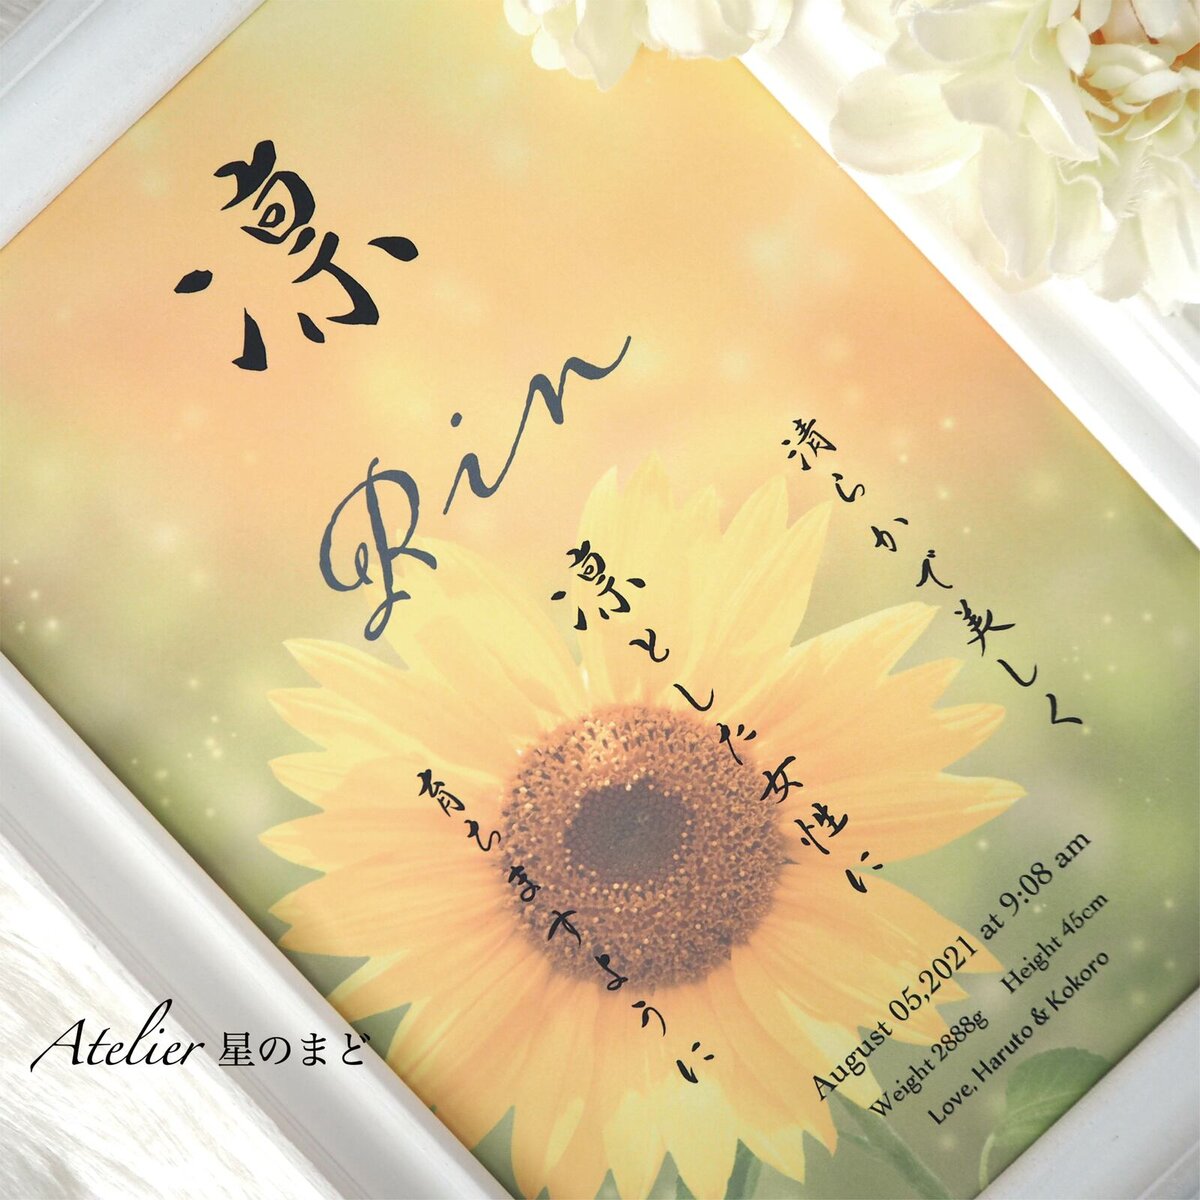 可愛く明るい向日葵のお花を背景に、ご出産された季節・風景も大切な思い出として、1枚の命名書にデザインさせて頂く命名書、インテリアとしてもお勧めです♪